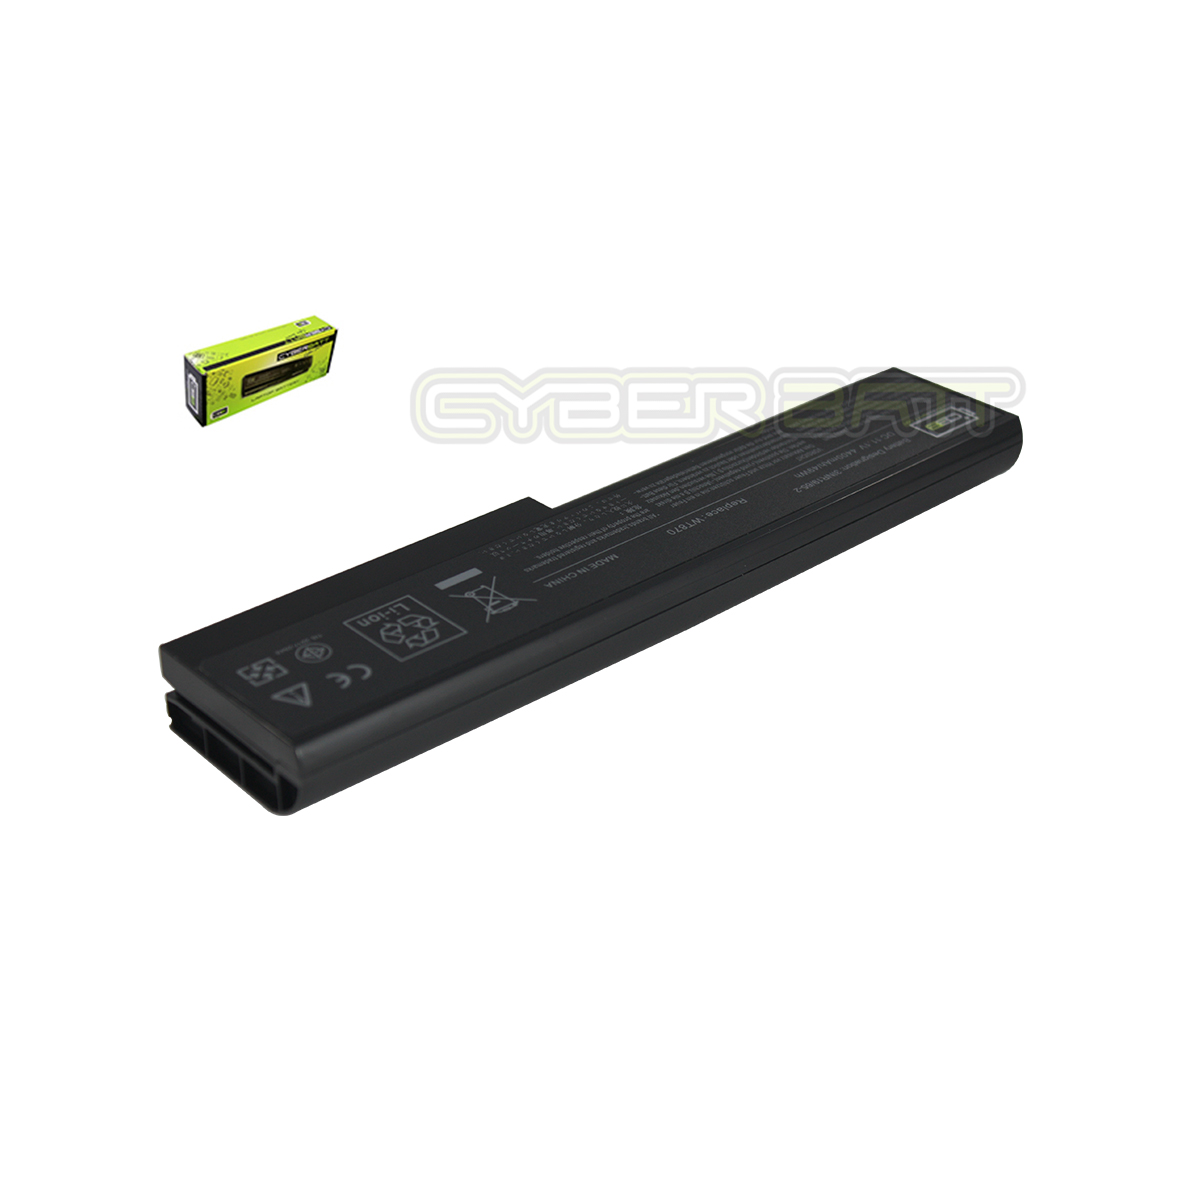 Battery Dell Studio 1435 : 11.1V-4400mAh Black (CYBERBATT)